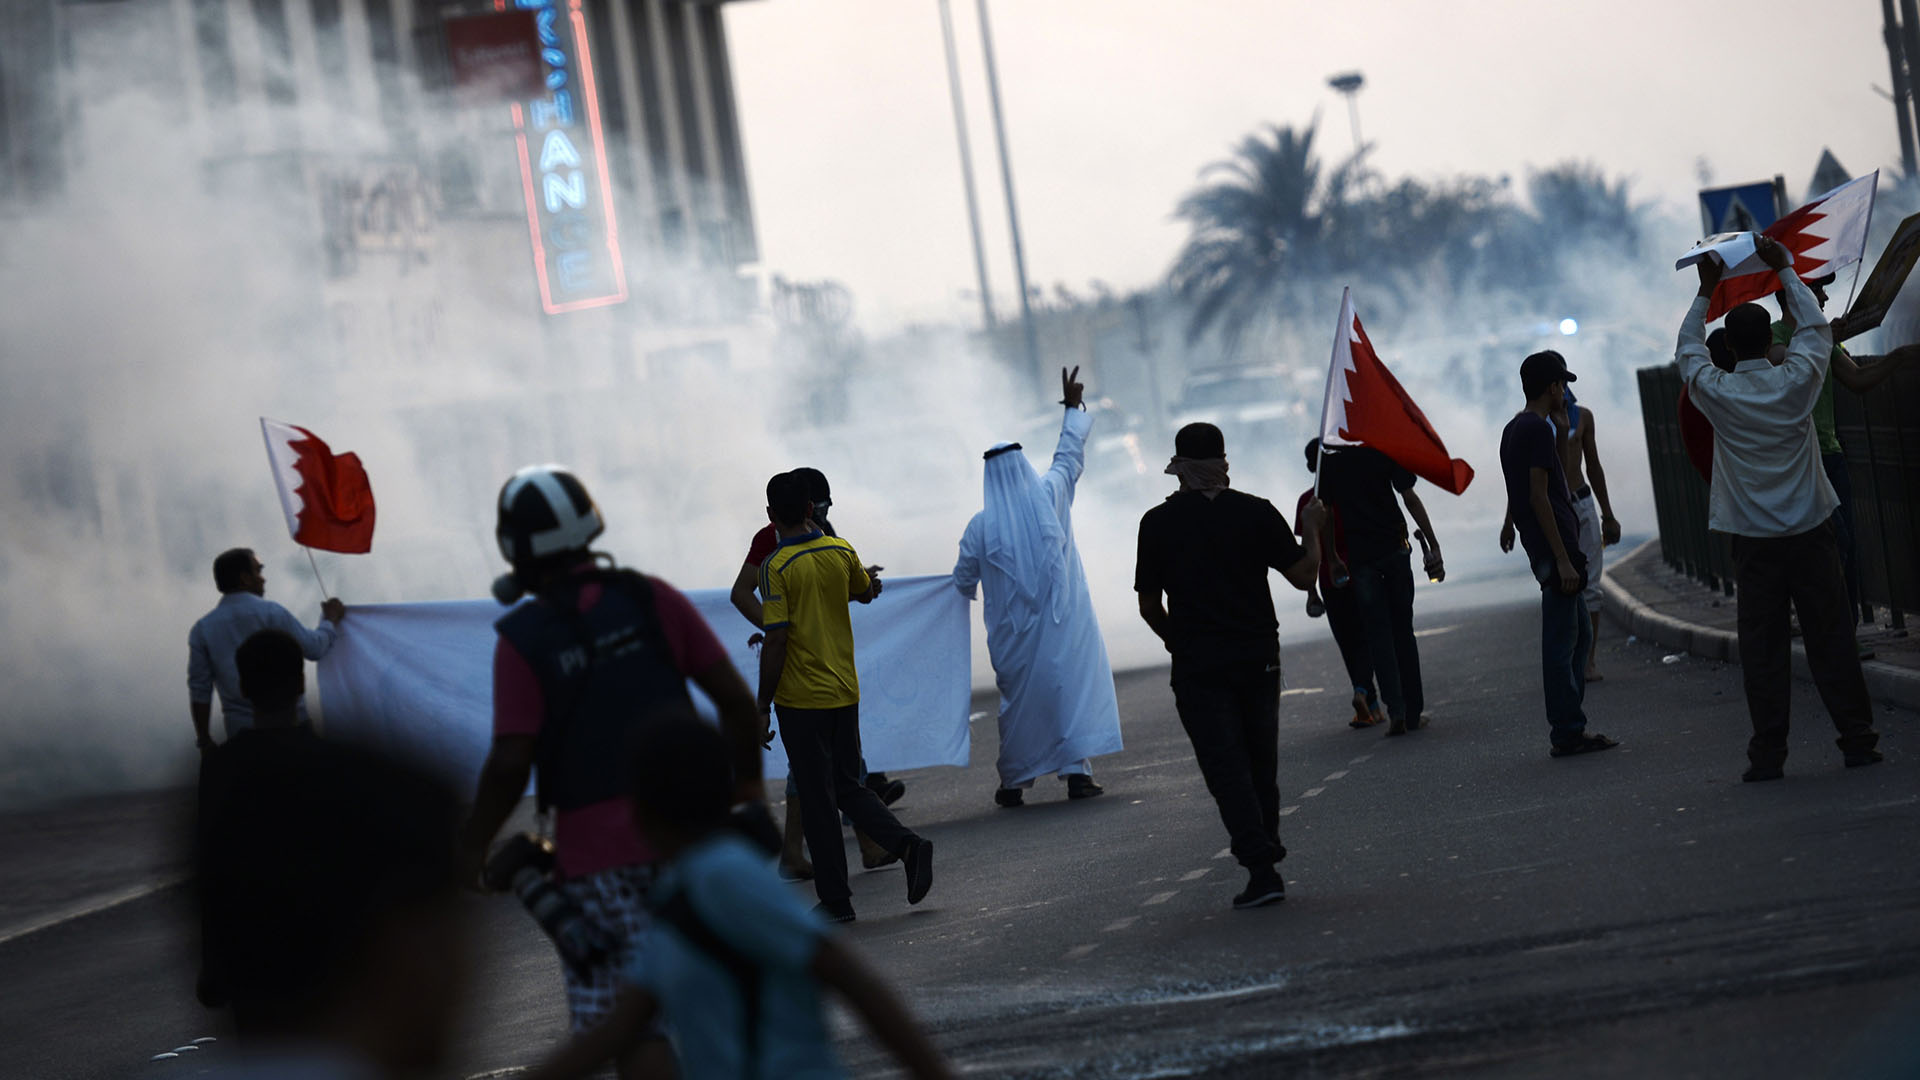 البحرينيون يرفعون شعار "رحيلكم محتم" في تظاهرات احتجاجية